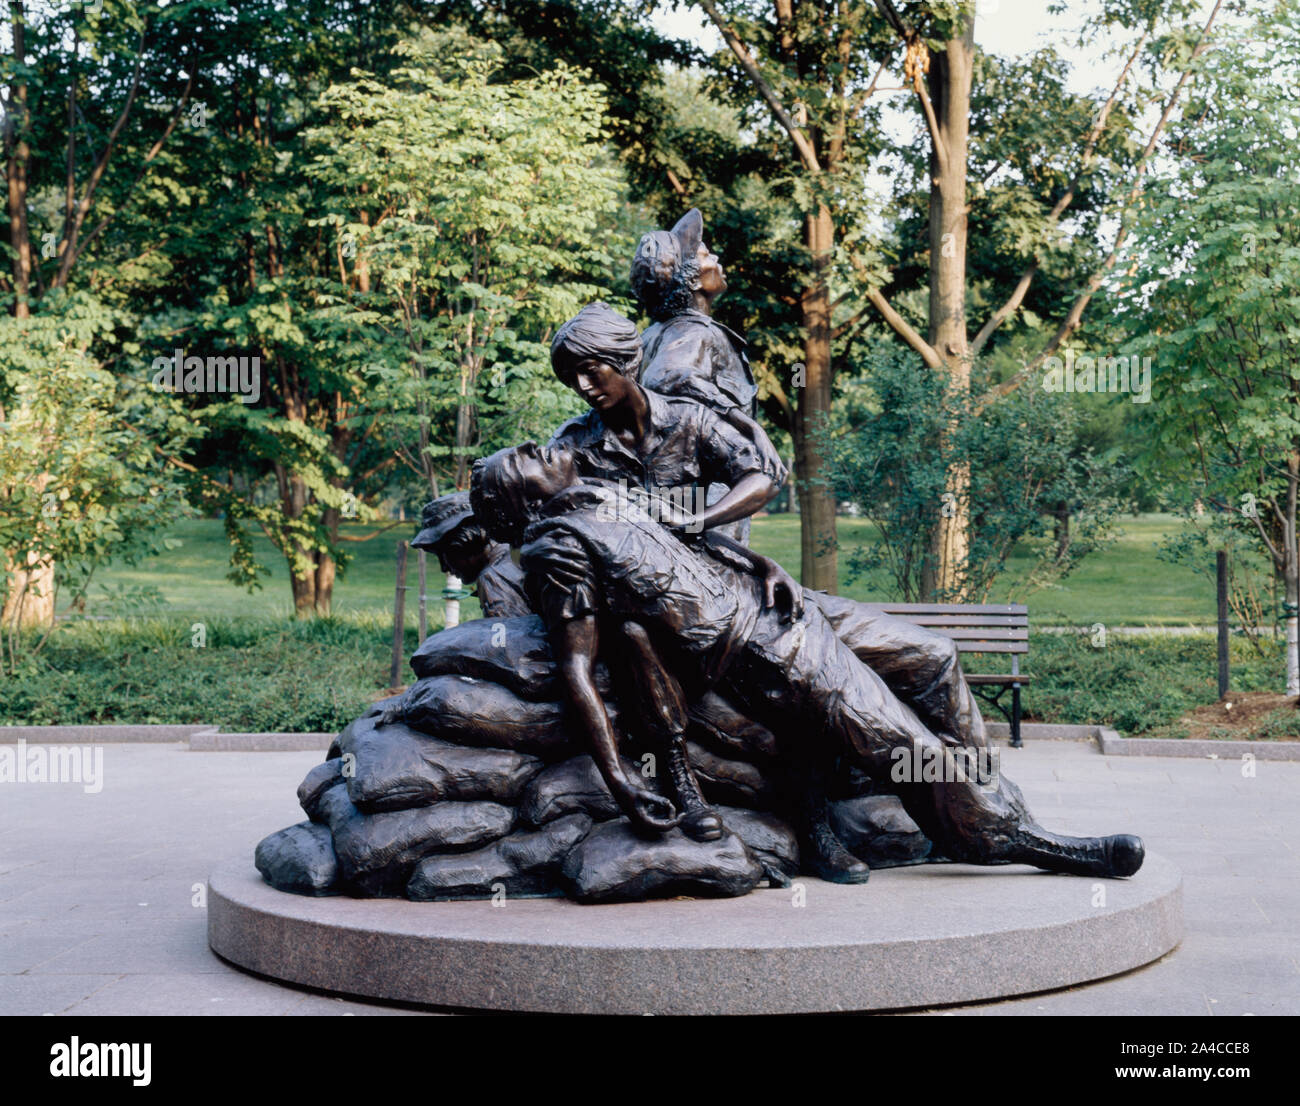 Le Vietnam Women's Memorial, le premier mémorial placé dans la capitale du pays Honouring Women's service militaire est sur le terrain de la Vietnam Veterans Memorial à Washington, D.C Banque D'Images